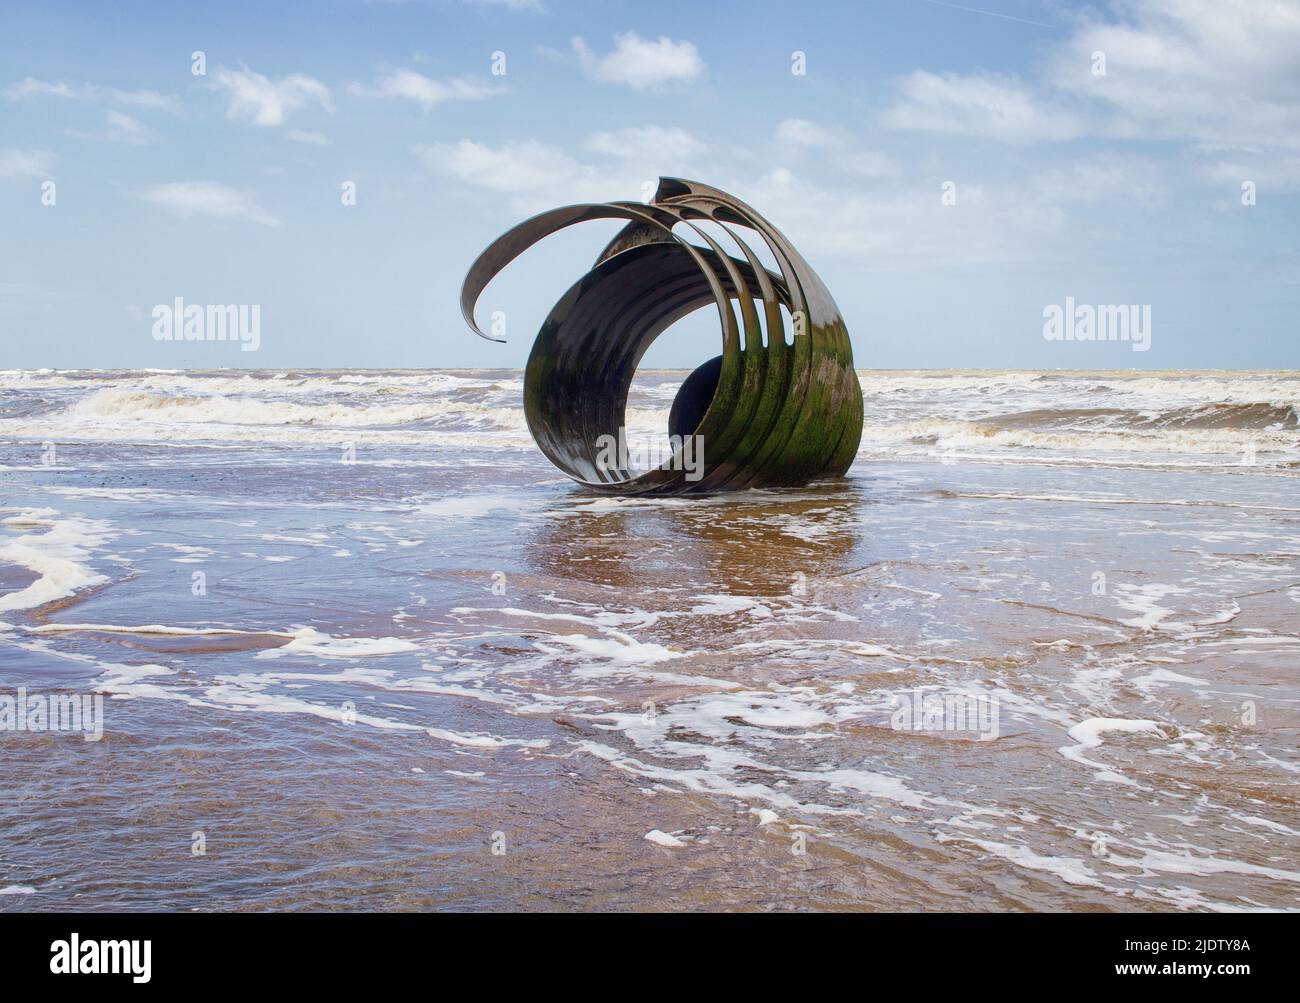 Aguas residuales, después de la marea alta, rodeando la escultura de Mary's Golden Shell en Cleveleys Beach, Fylde Coast, Lancashire, Reino Unido Foto de stock